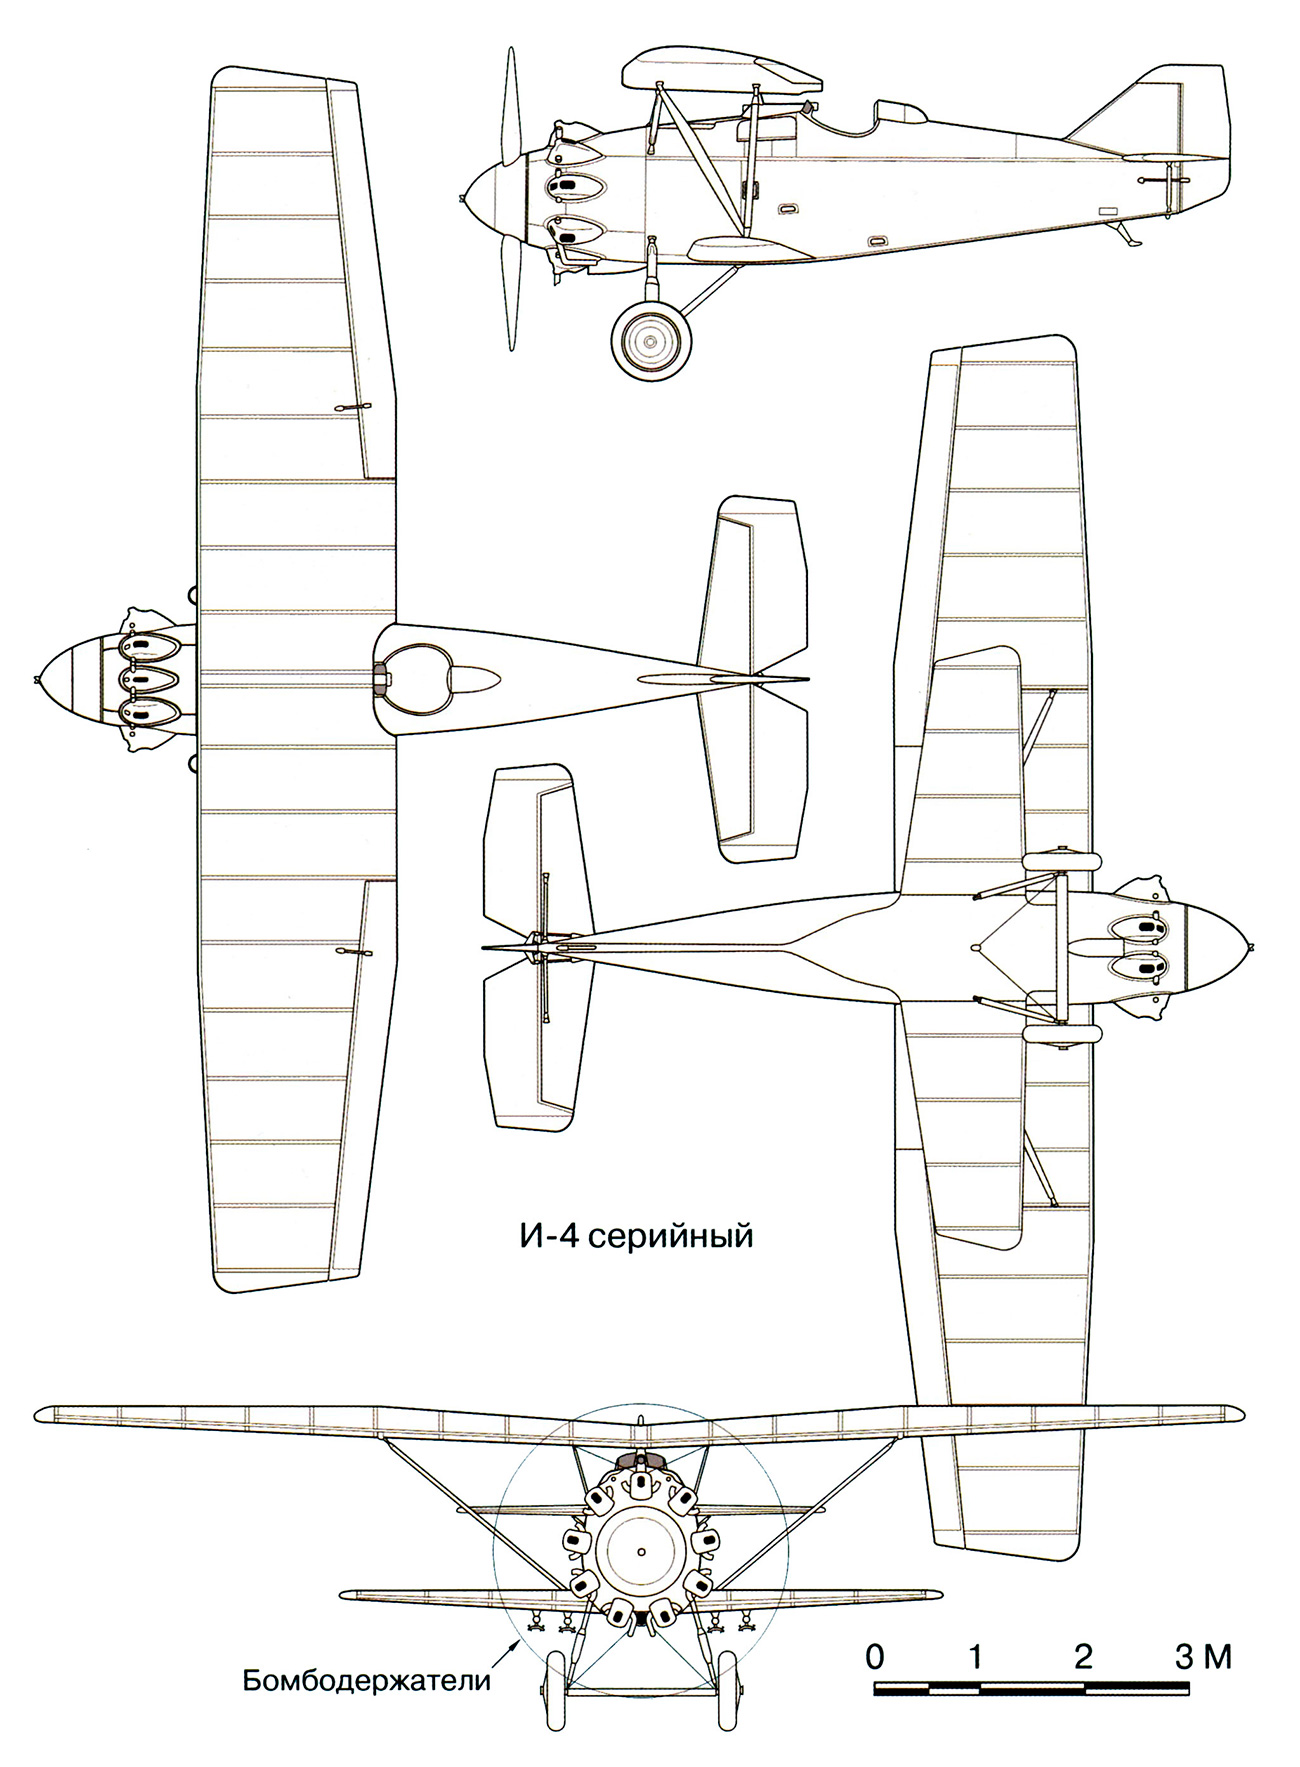 Чертеж истребителя И-4 (АНТ-5) конструкции П.О.Сухого